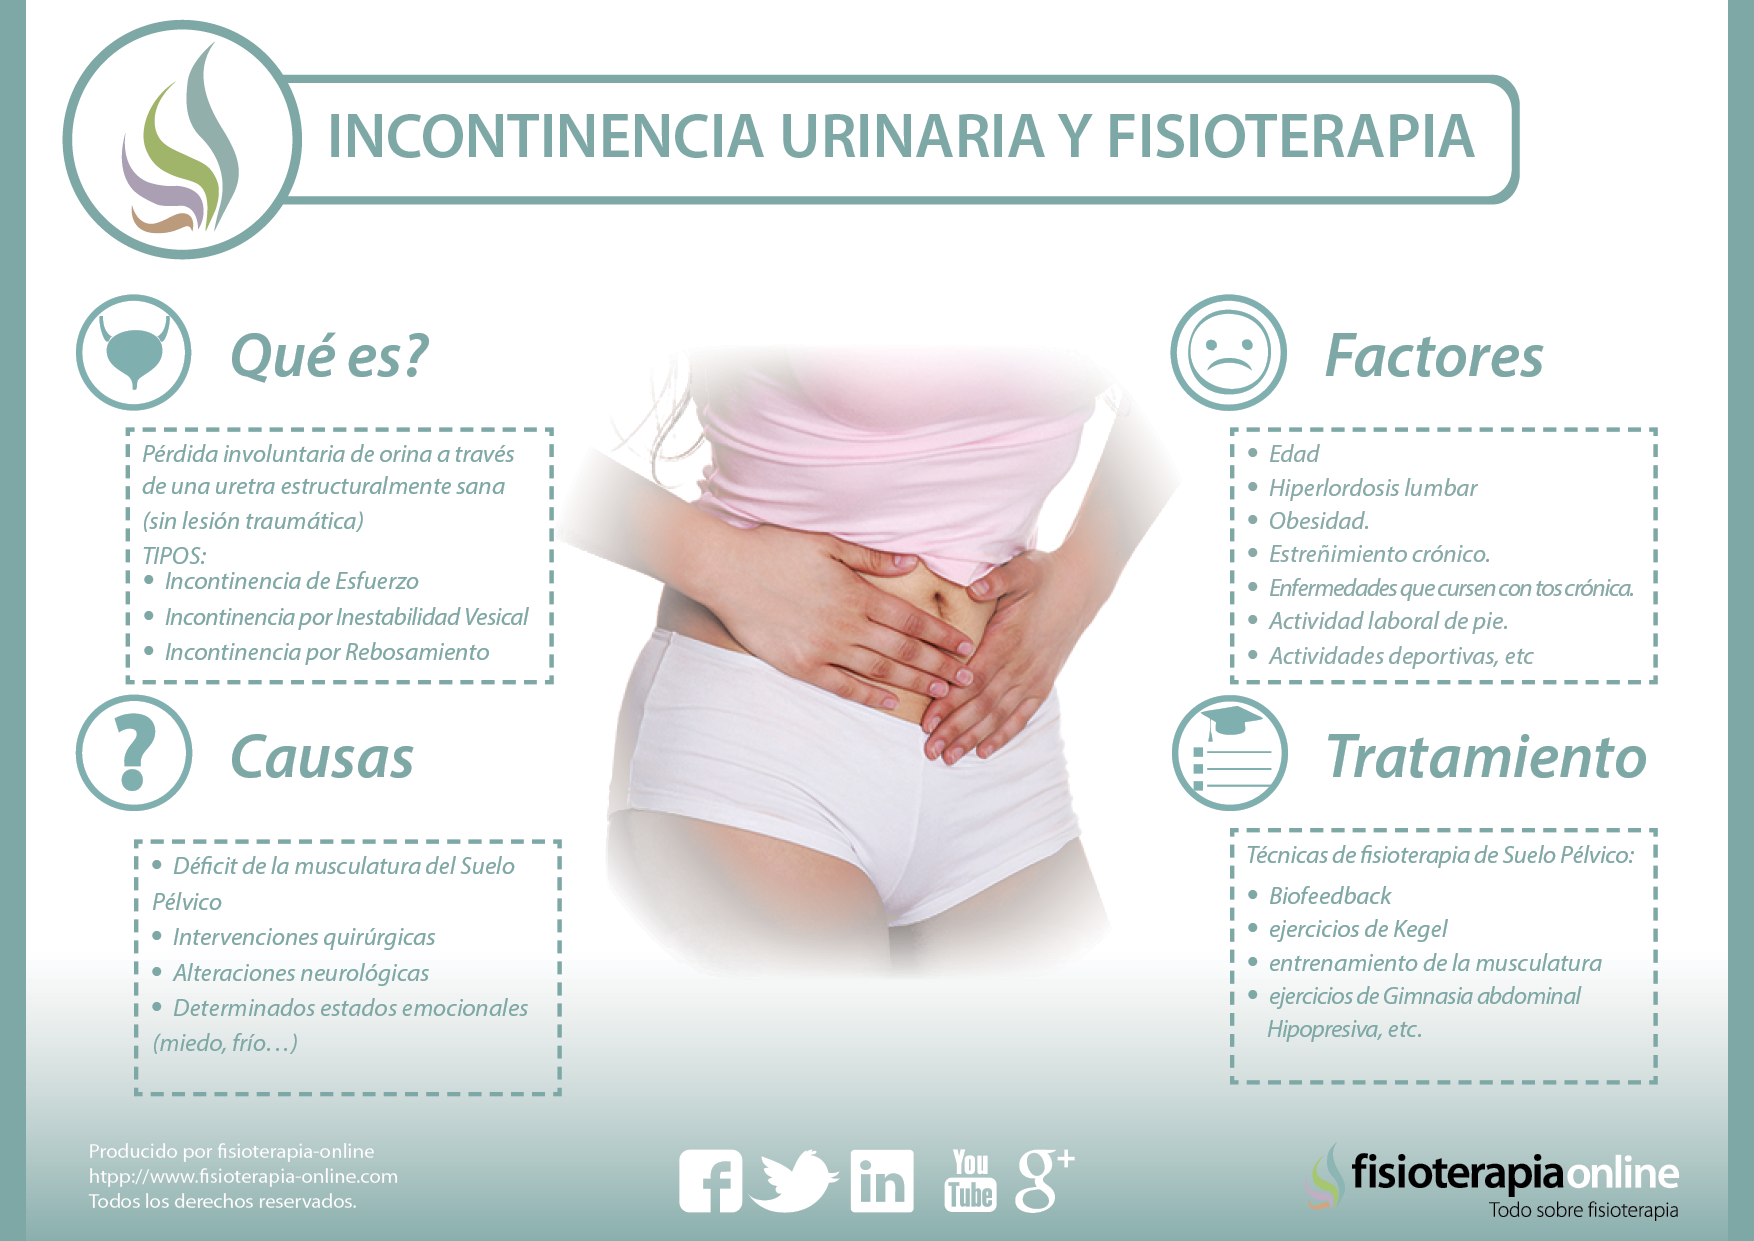 Consejos tras la operación de incontinencia urinaria - Rehabilitación